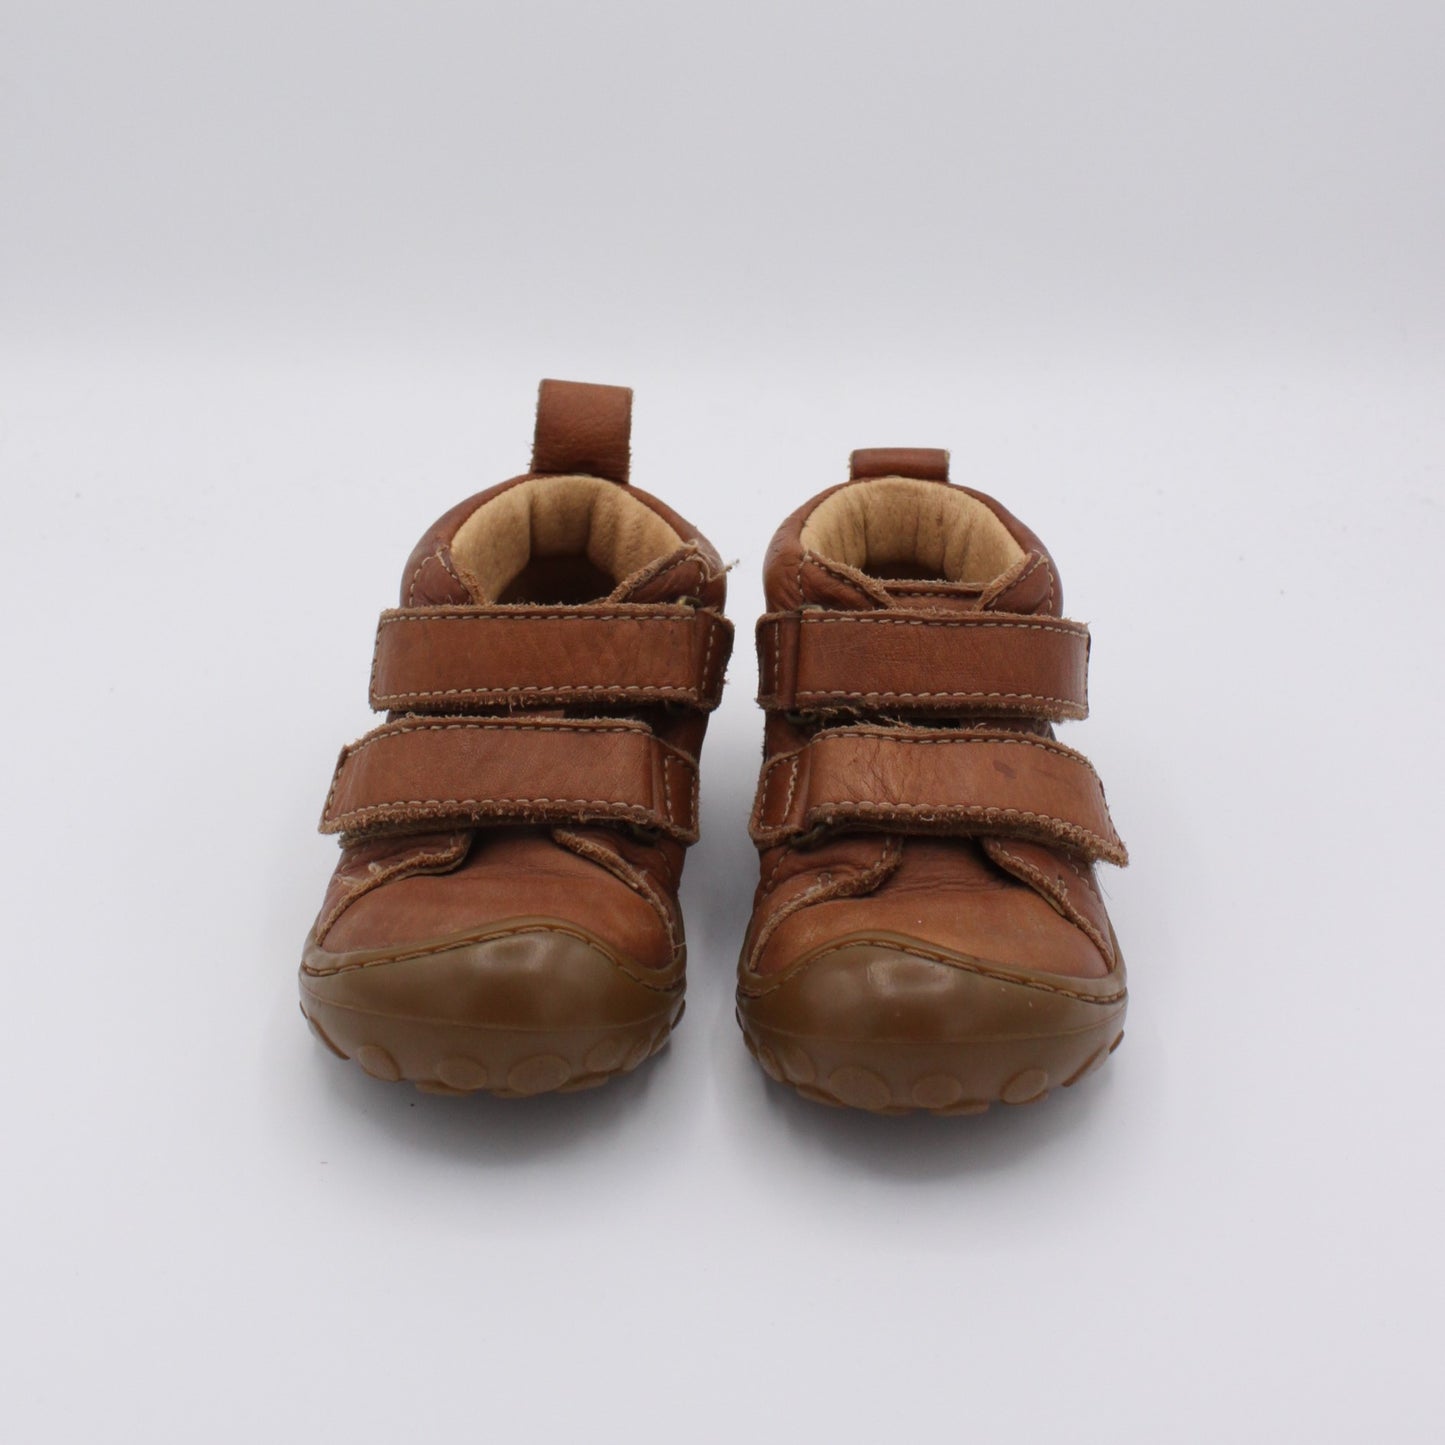 Pre-loved Schuhe (EU 21)